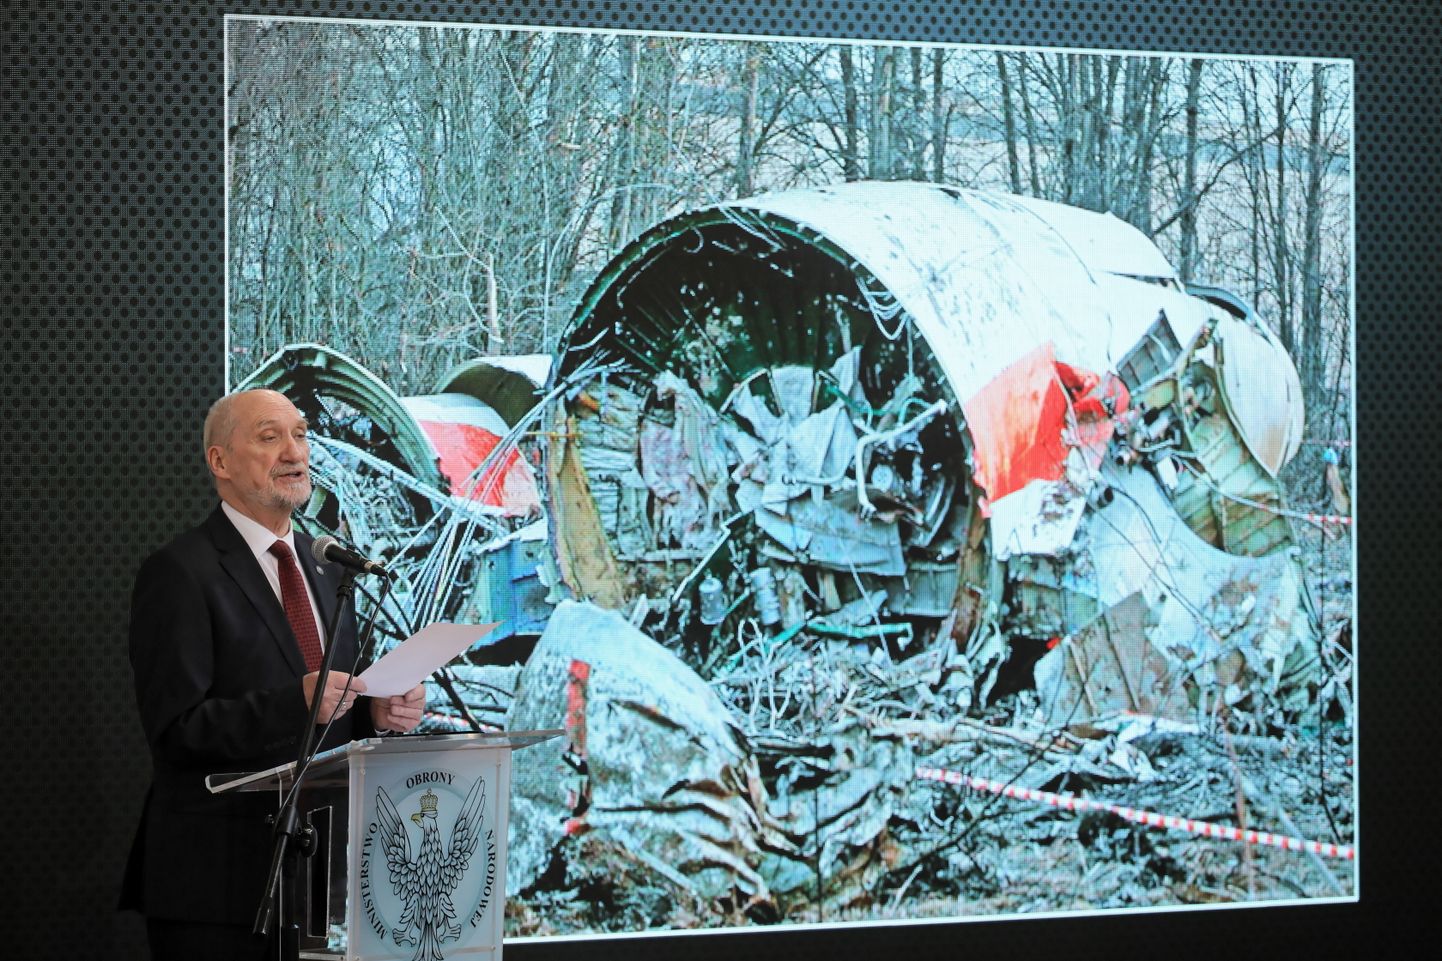 Специальная подкомиссия по причинам авиакатастрофы в Смоленске в апреле 2010 г. в парламенте Польши.